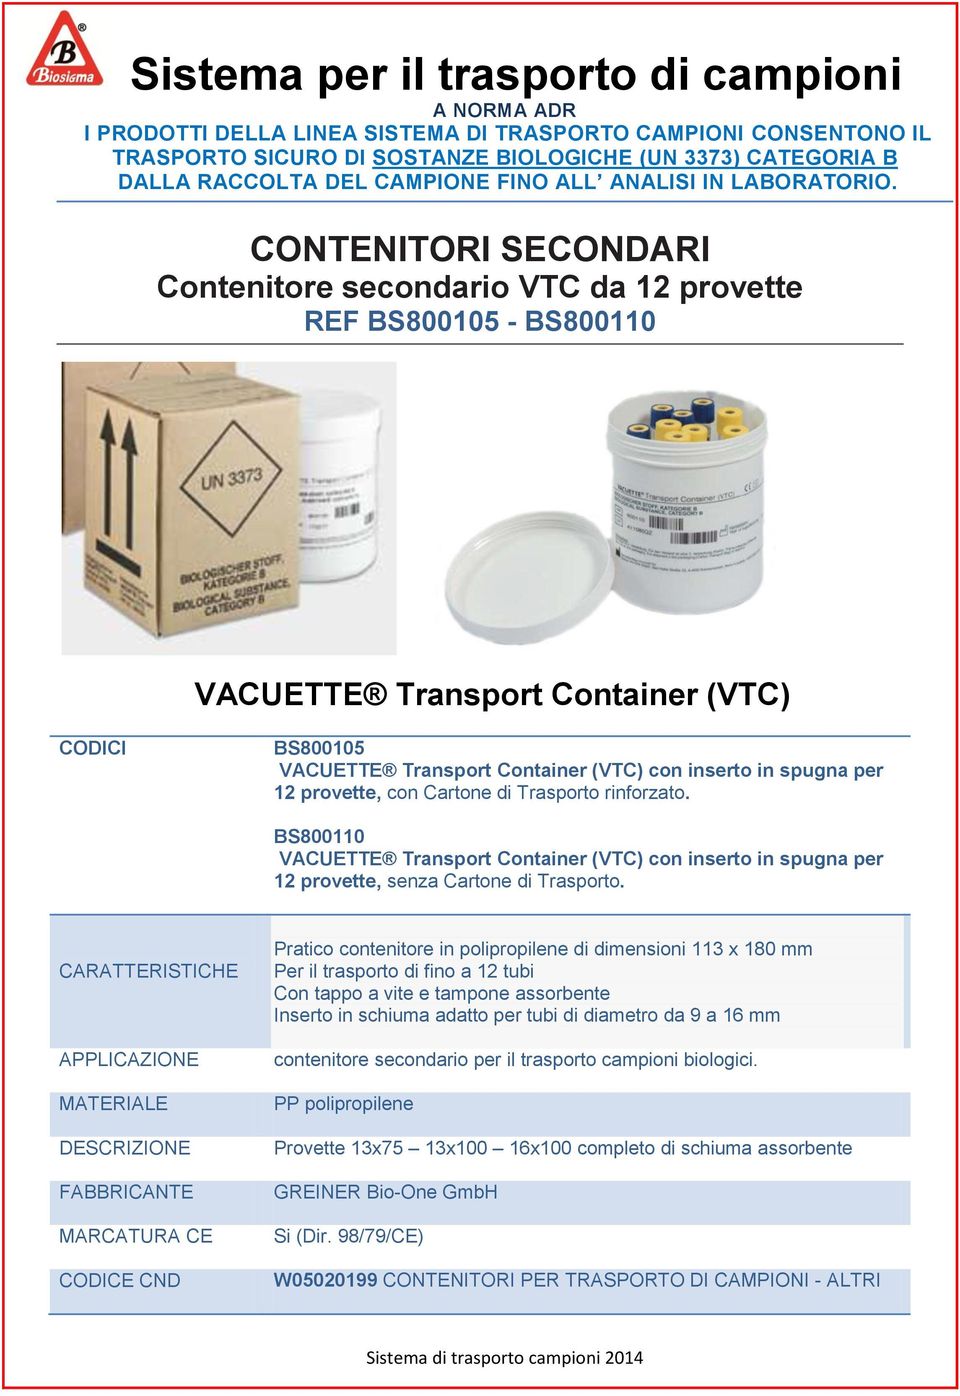 CONTENITORI SECONDARI Contenitore secondario VTC da 12 provette REF BS800105 - BS800110 VACUETTE Transport Container (VTC) CODICI BS800105 VACUETTE Transport Container (VTC) con inserto in spugna per